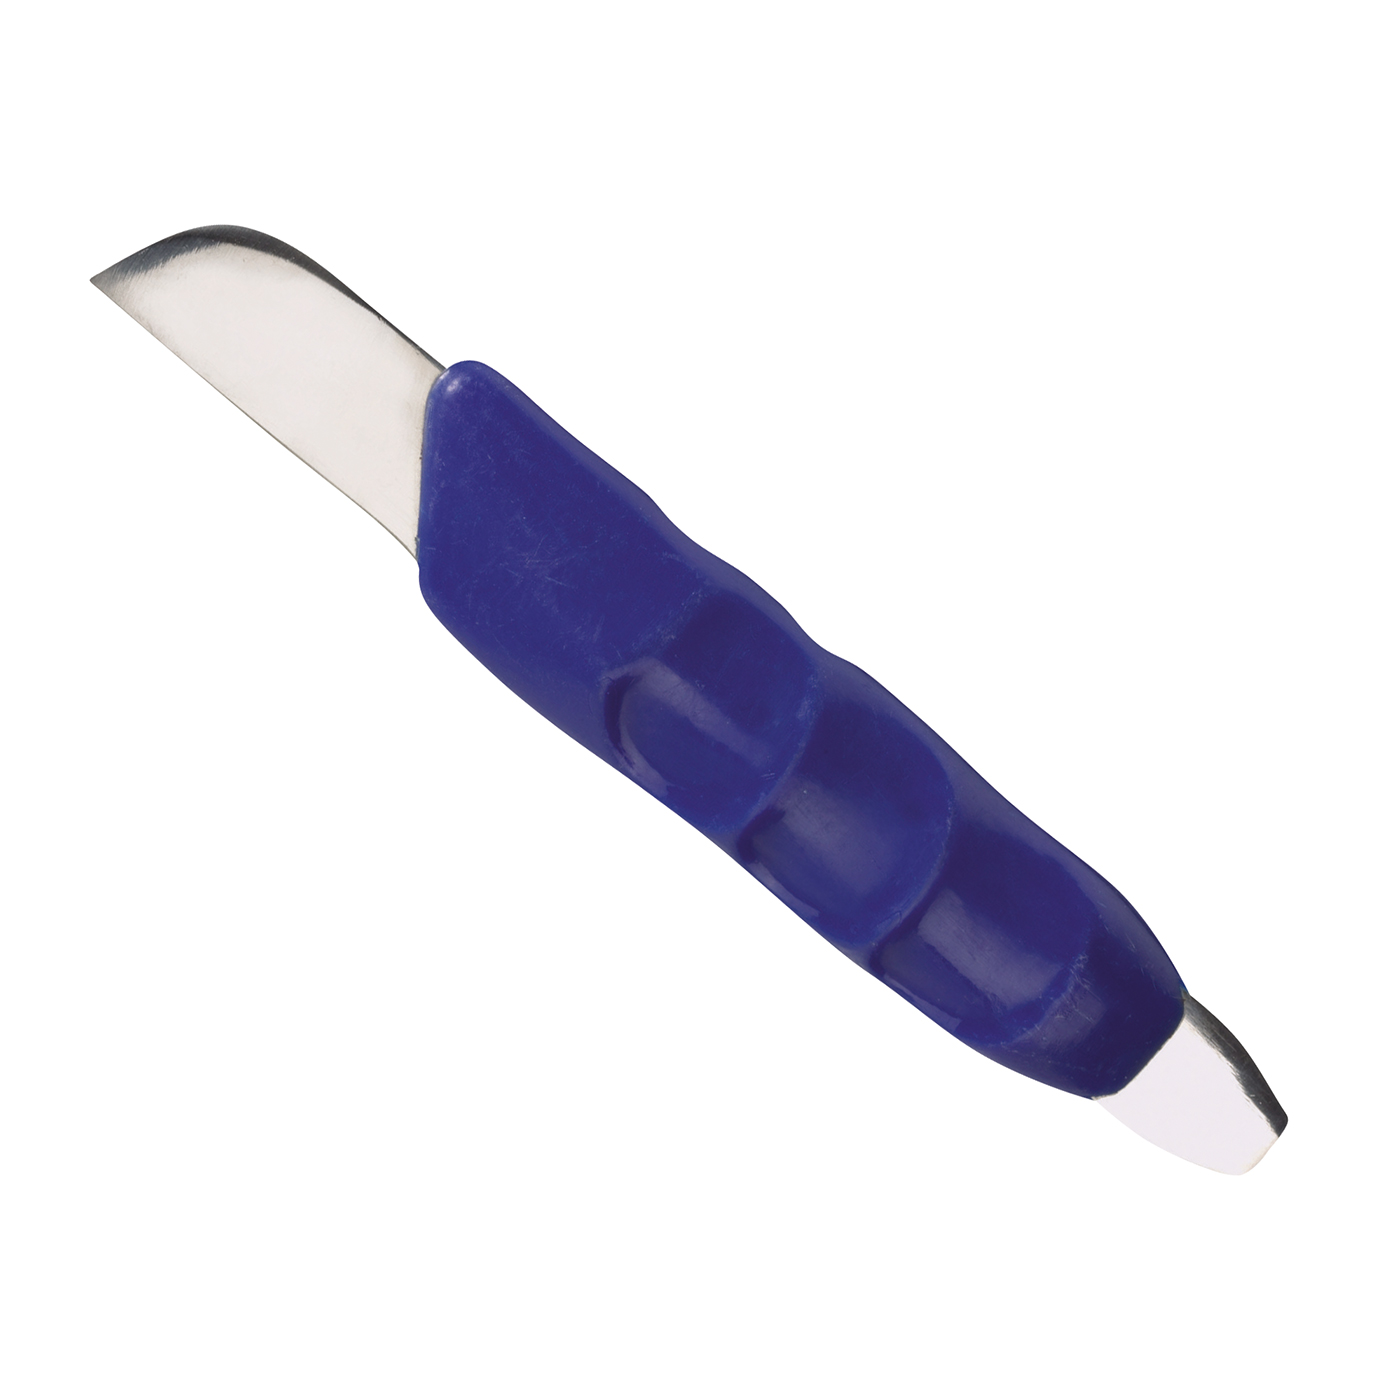 FINO Plaster Knife, Short Blade - 1 piece